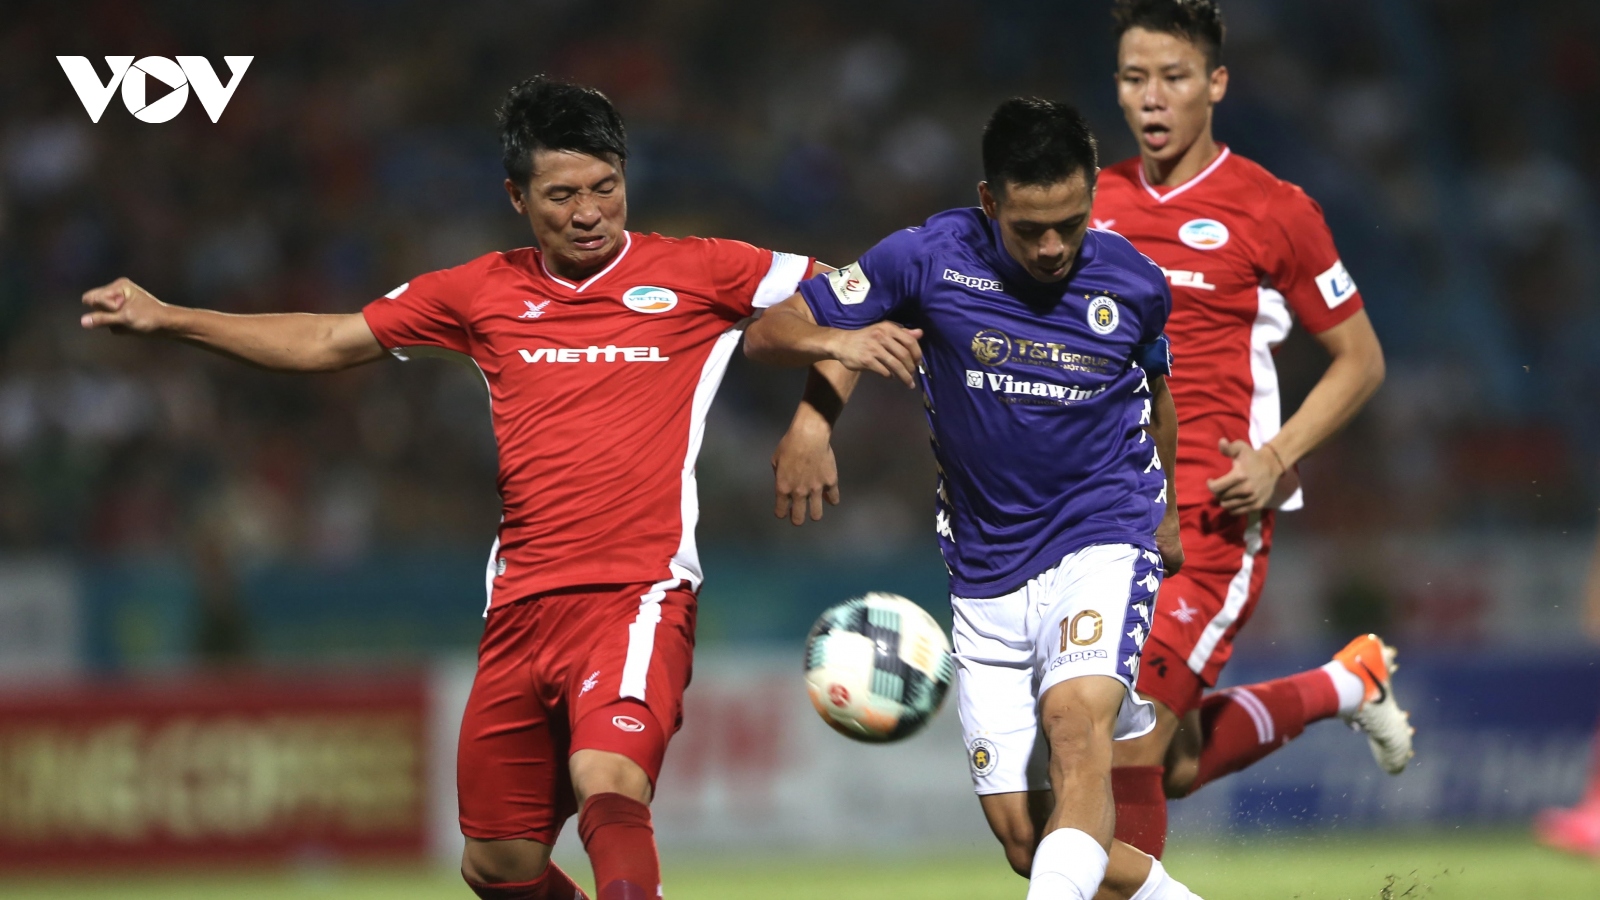 Viettel - Hà Nội FC: Chung kết lịch sử của bóng đá Thủ đô